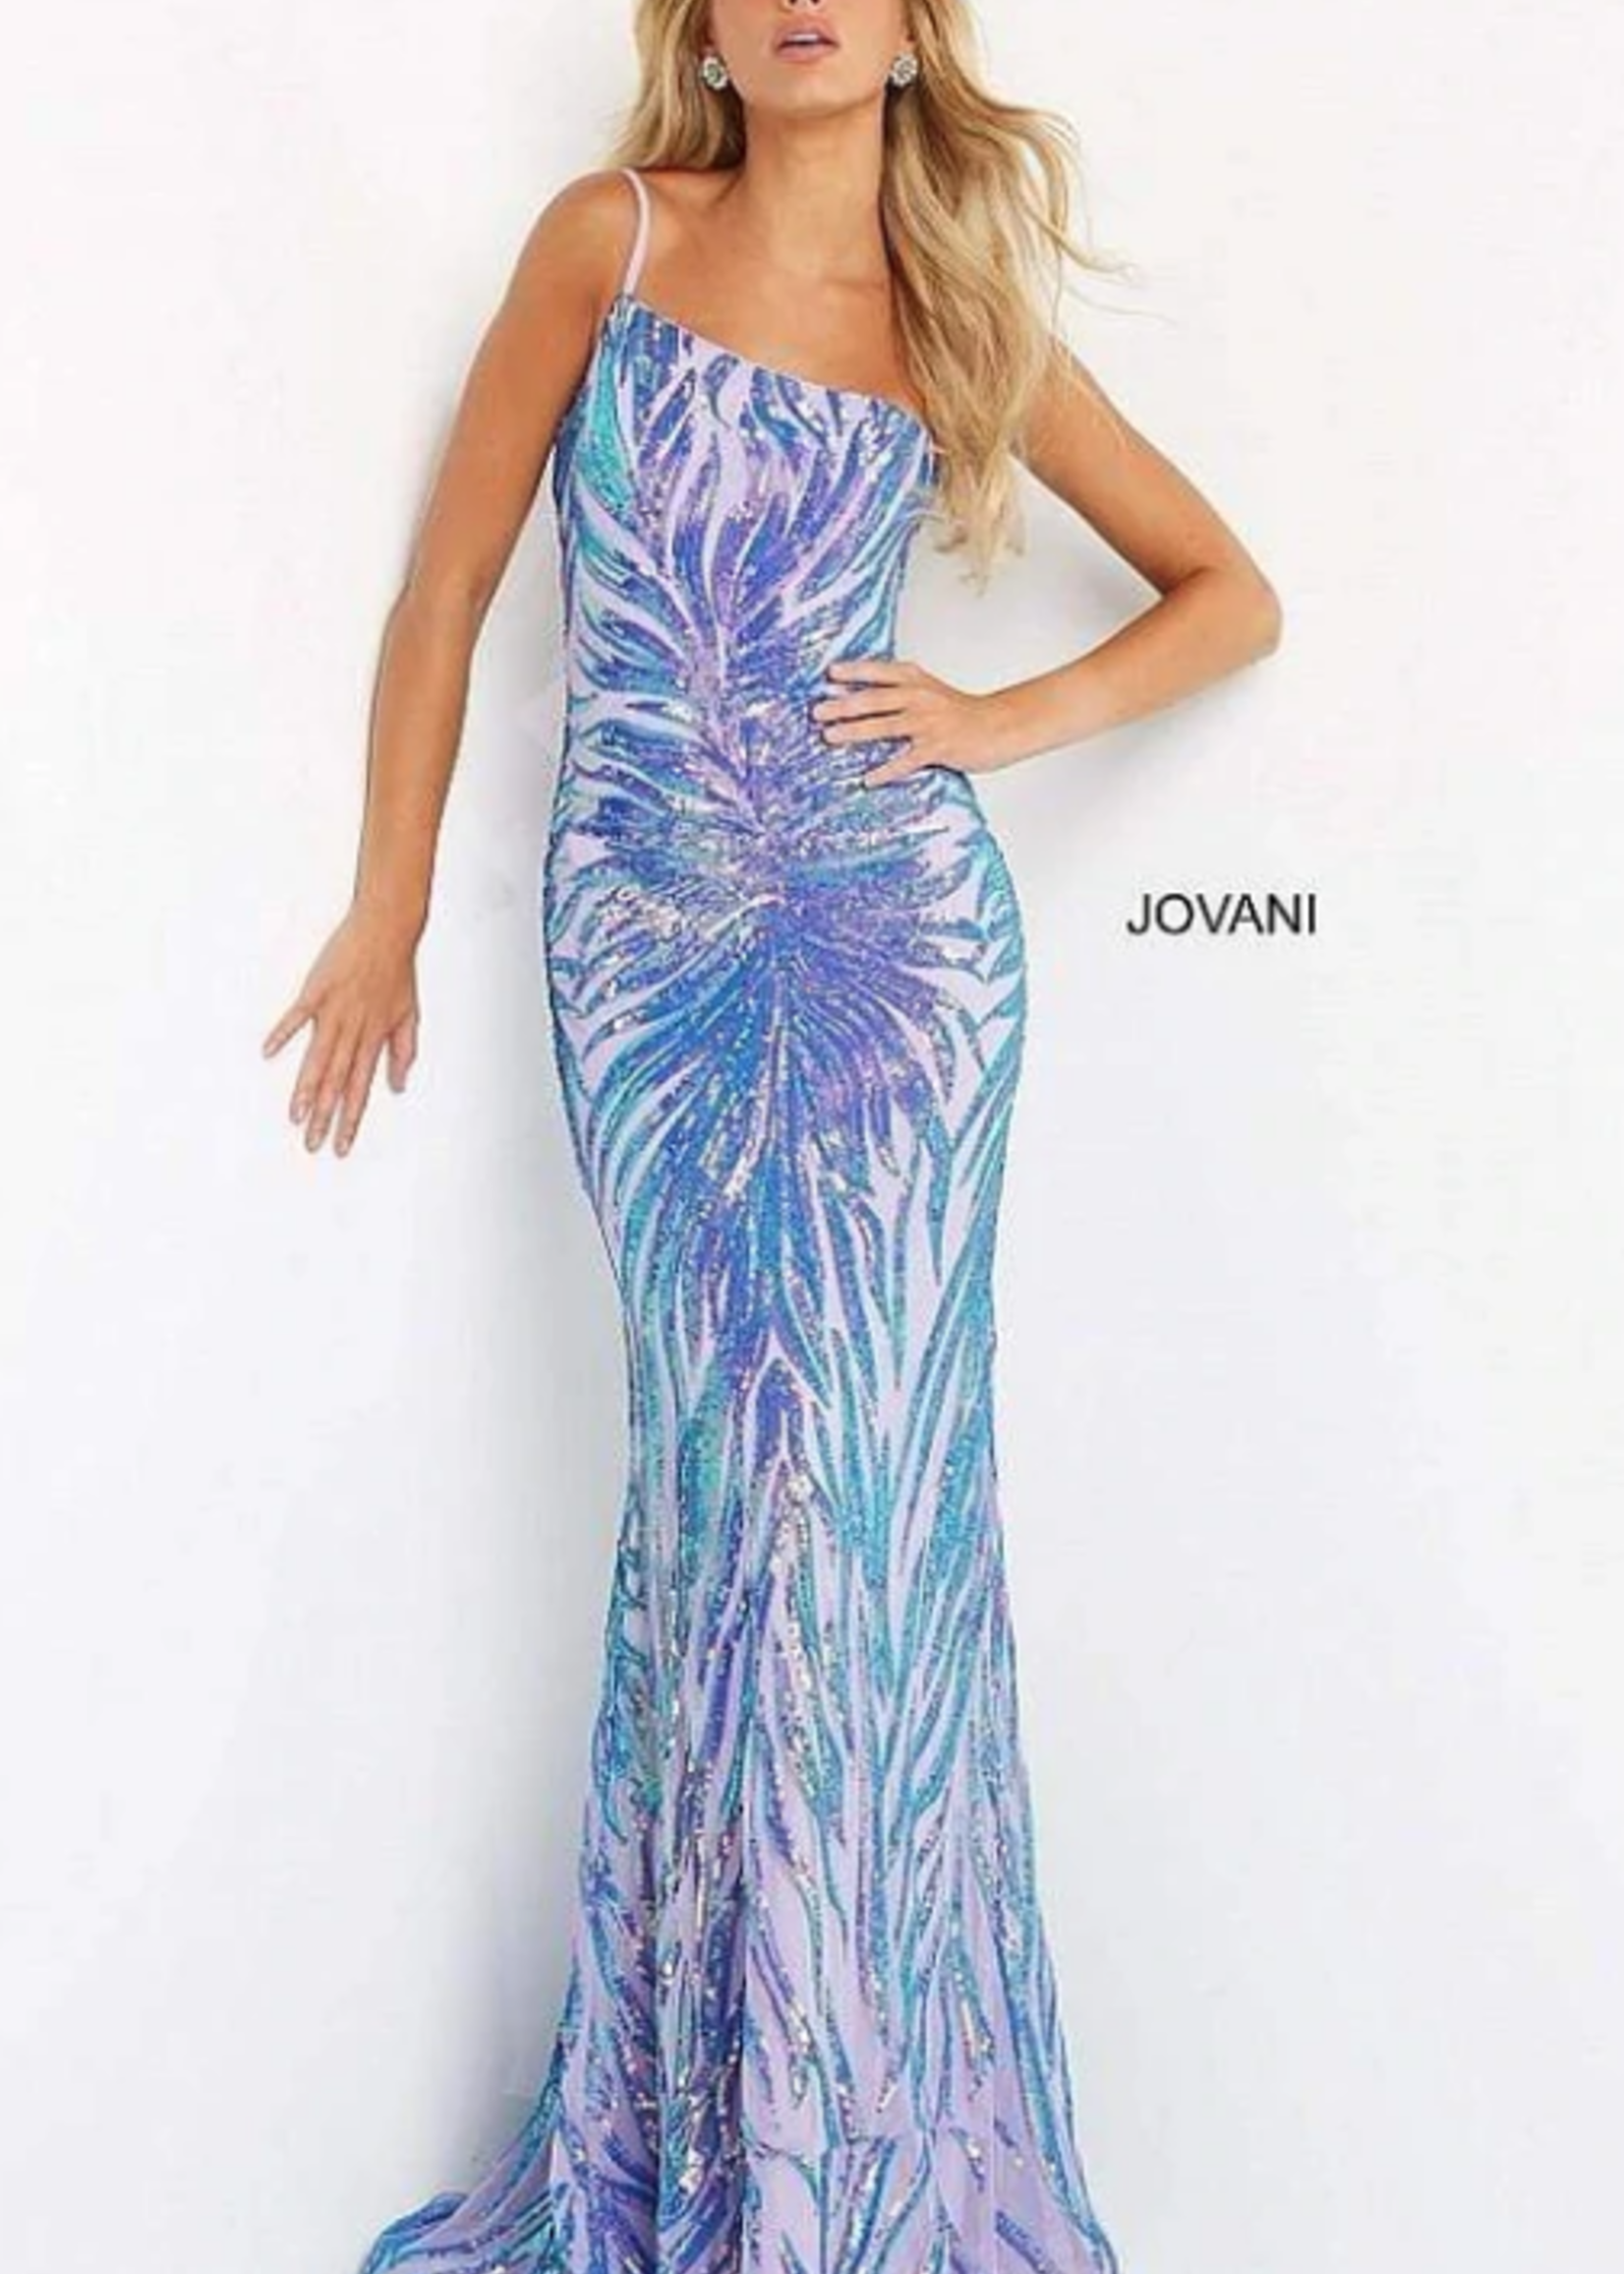 Jovani Dream a Dream Iridescent Formal Dress (4 Colors)